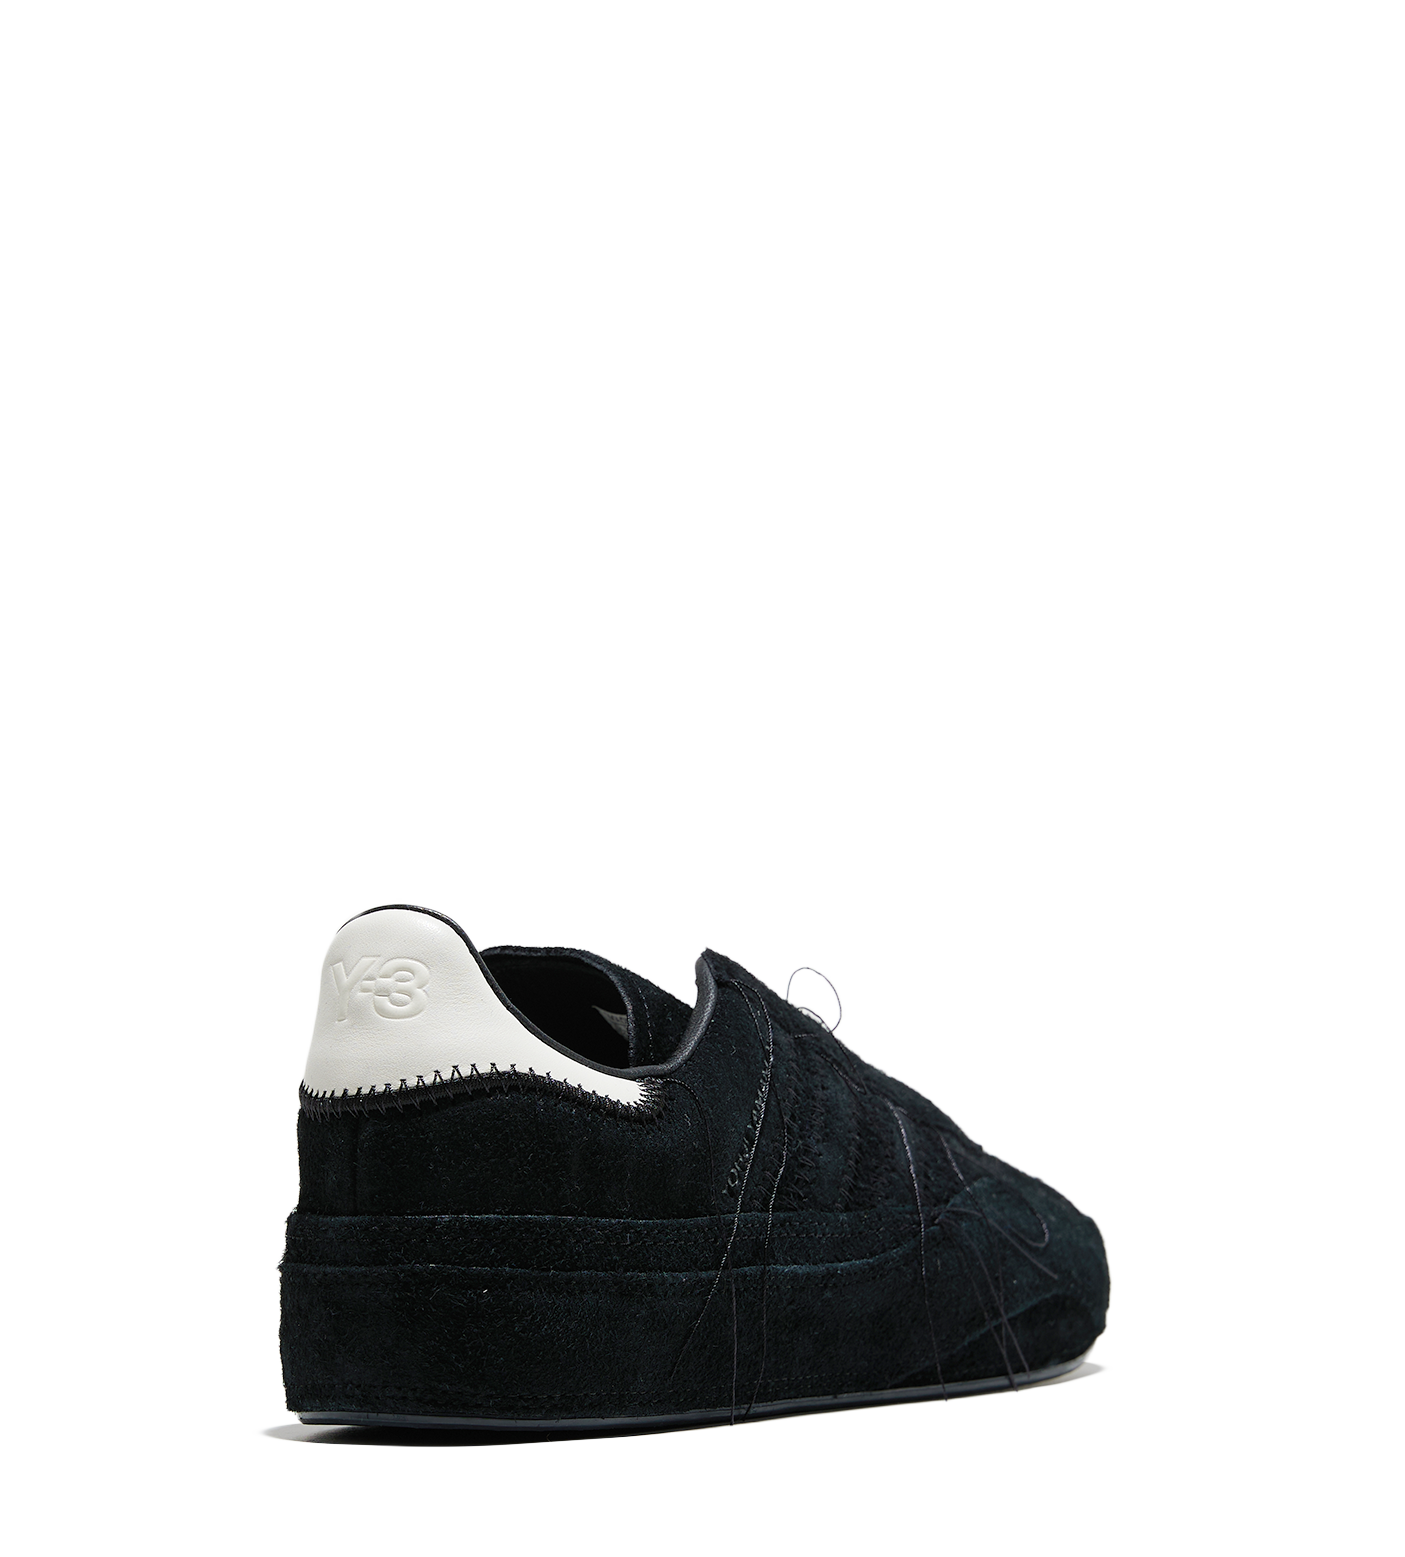 Gazelle Sneakers Black